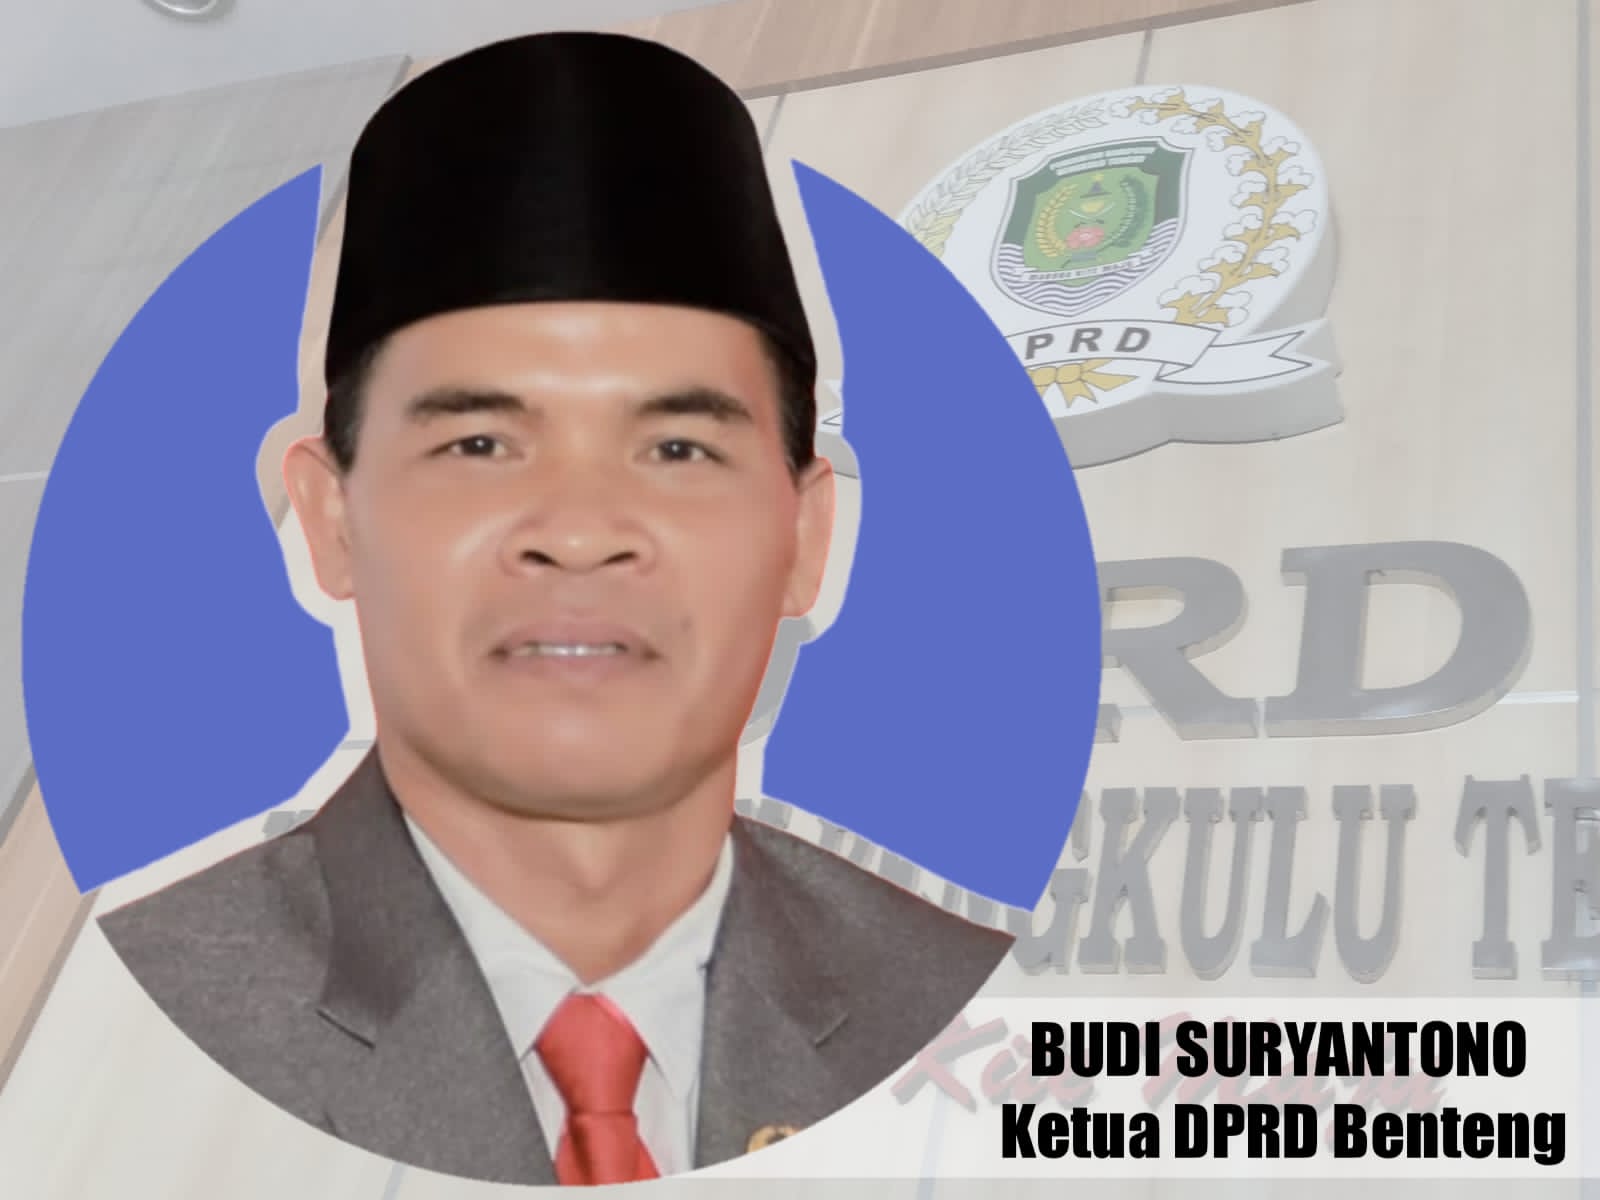 Ketua DPRD Bengkulu Tengah Minta Pj Bupati Prioritaskan Pejabat Lokal Duduki Jabatan Lowong, Alasannya